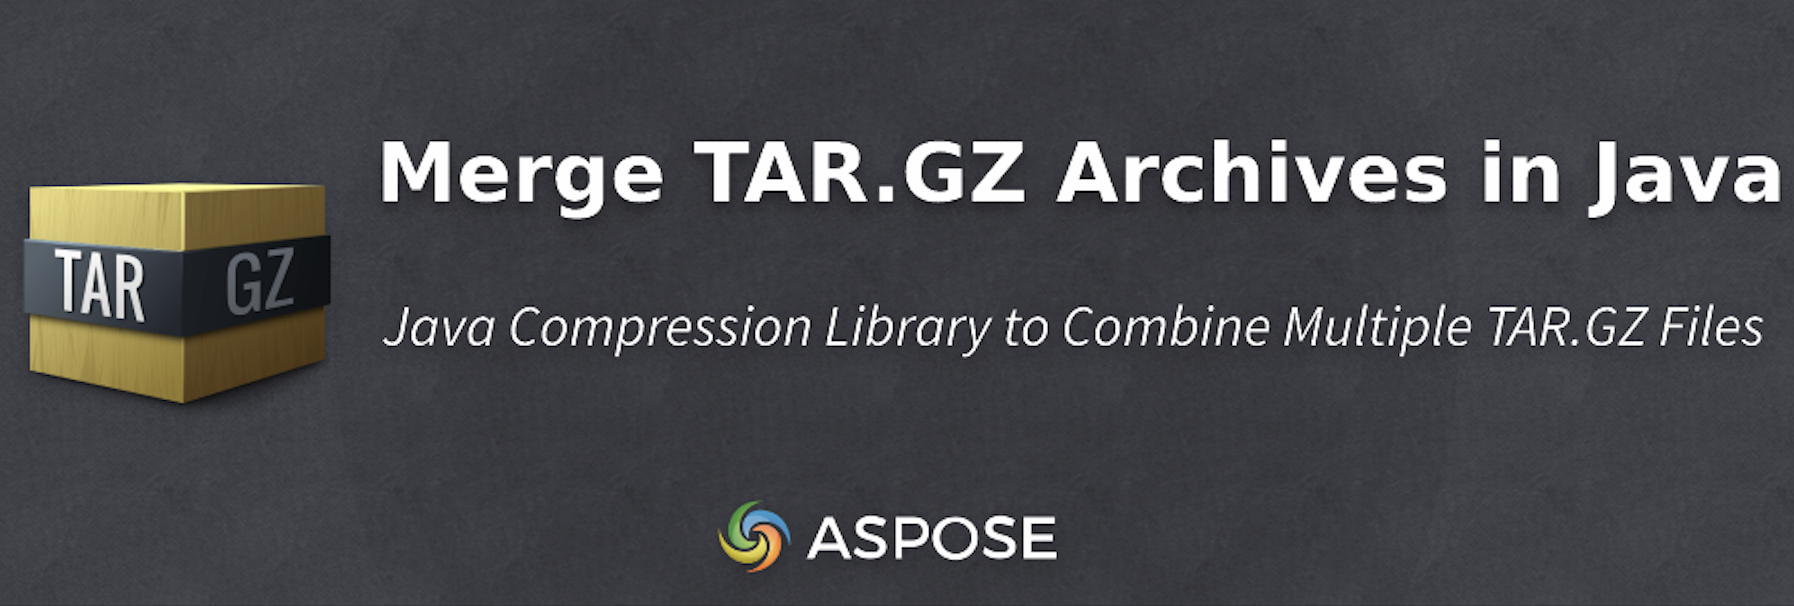 Fusionar archivos TAR.GZ en Java mediante programación